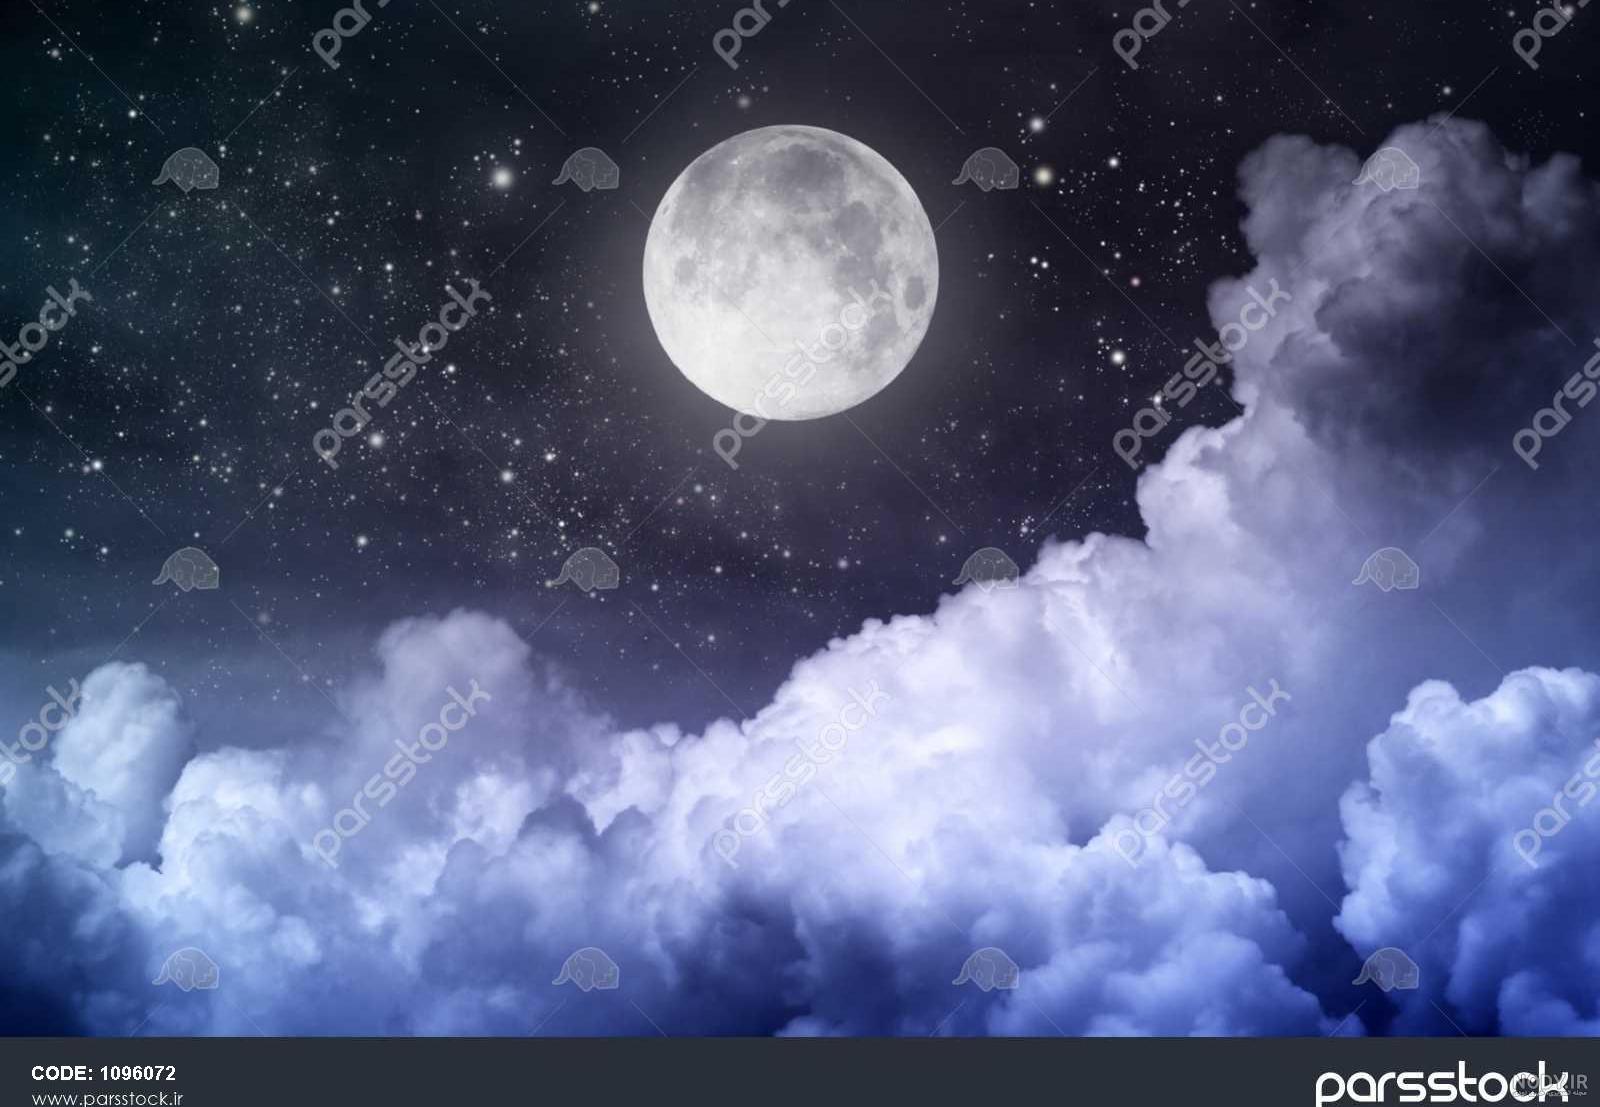 عکس شب با ماه و ستاره